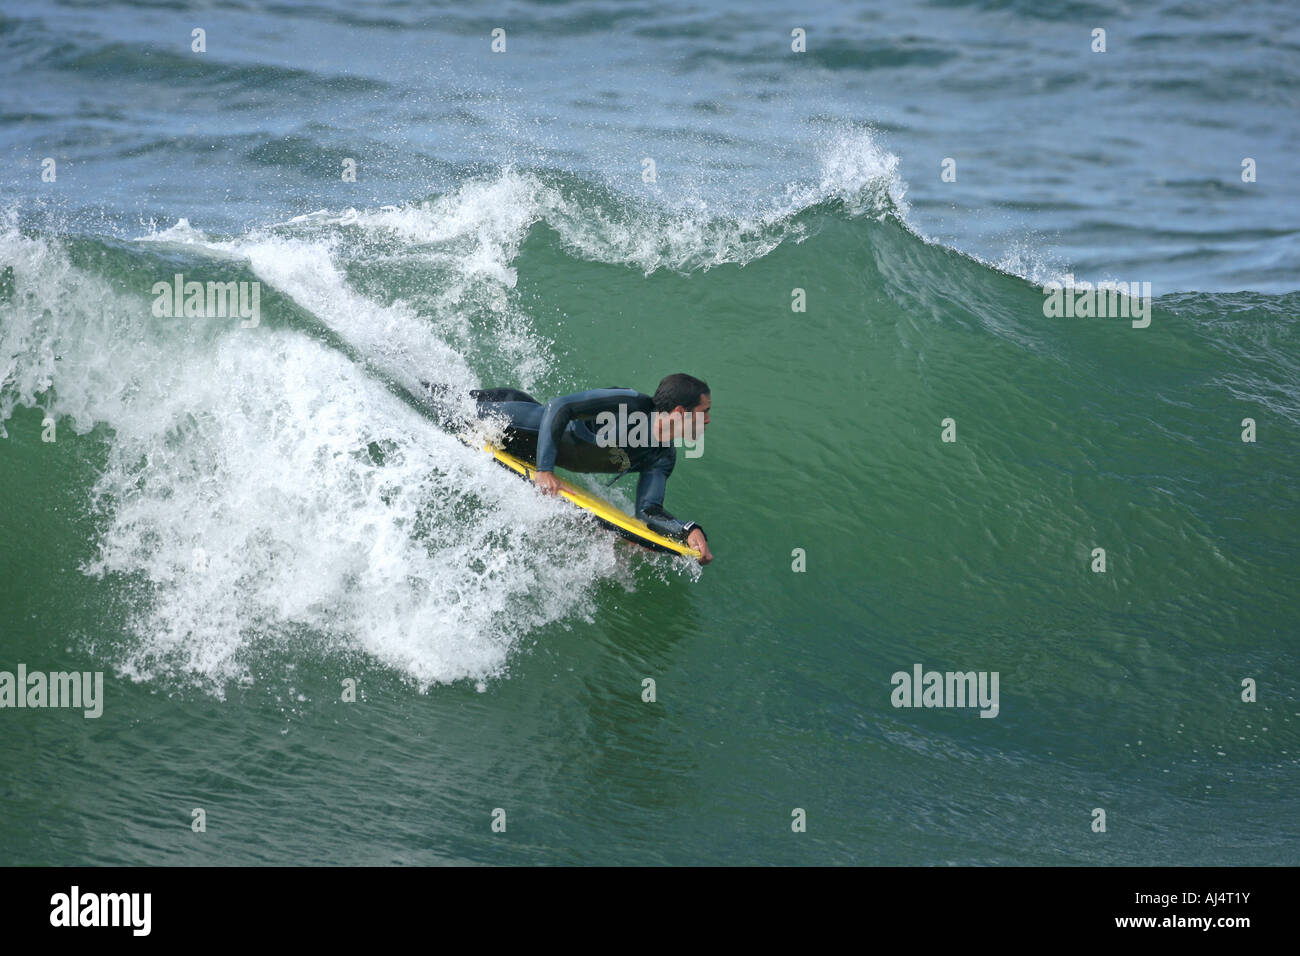 Un corps Boarder surfe une vague Banque D'Images